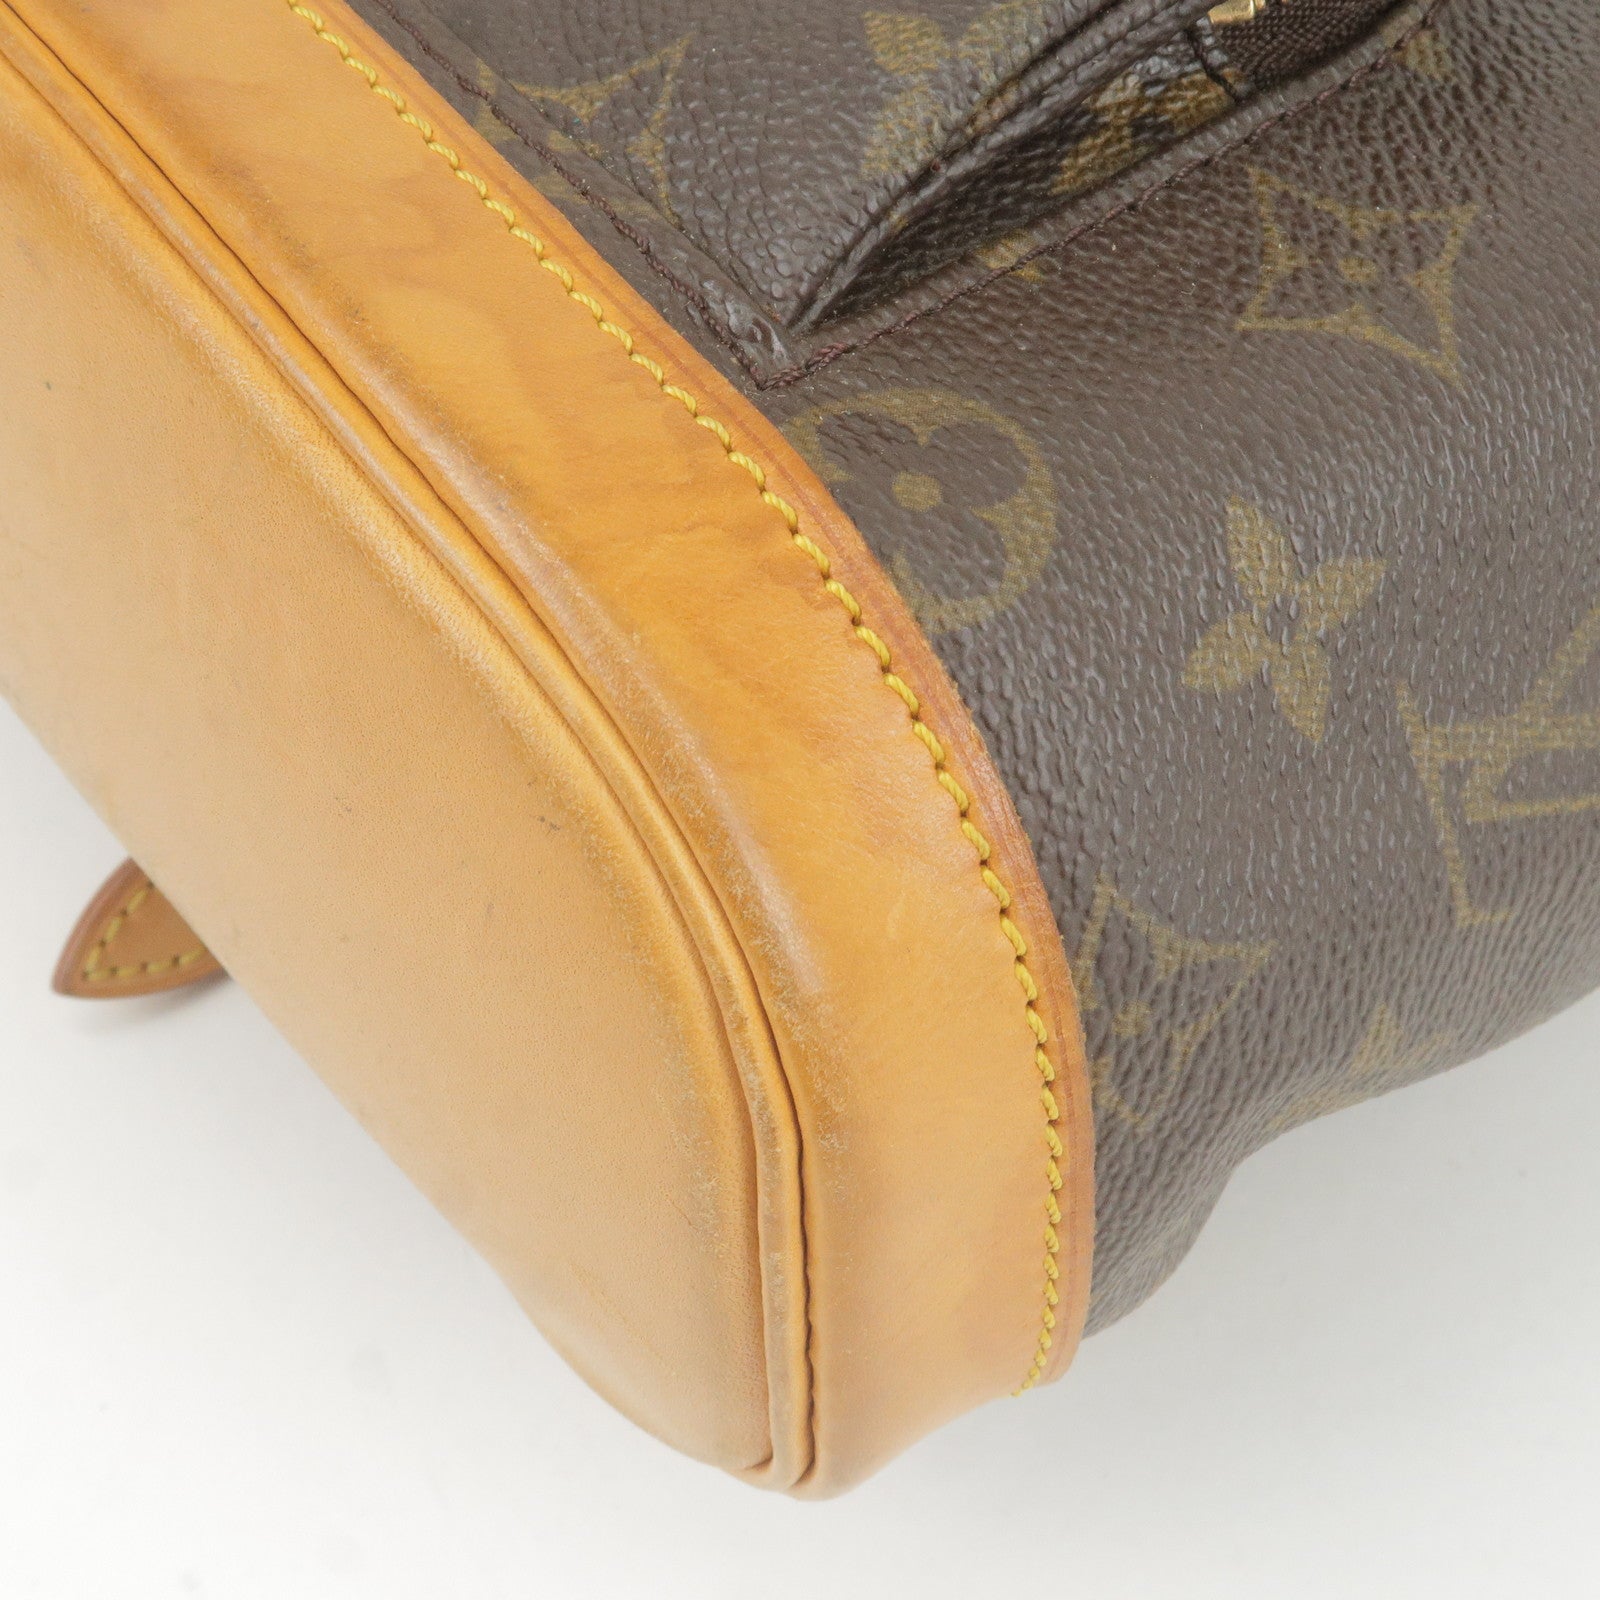 Monogram - Mini - Louis - Vuitton - Valigia Louis Vuitton Geant Souverain  in tela a scacchi marrone e pelle naturale - Back - Pack - Bag - Montsouris  - M51137 –